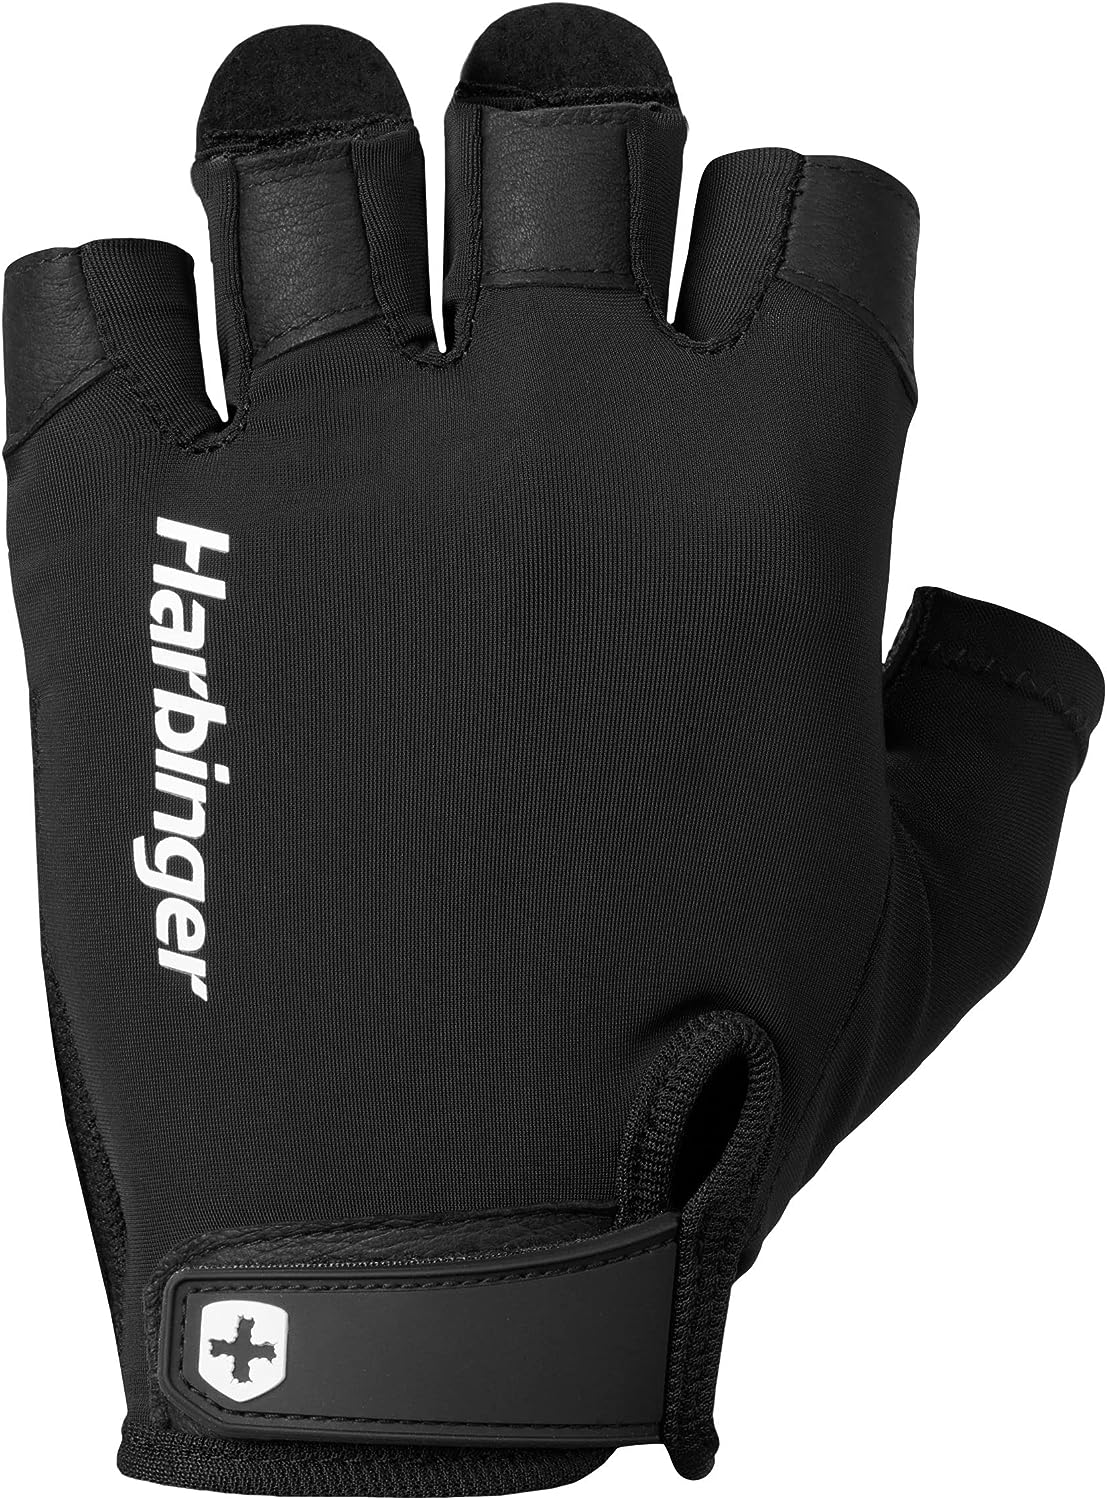 Harbinger - Pro Gloves 2.0